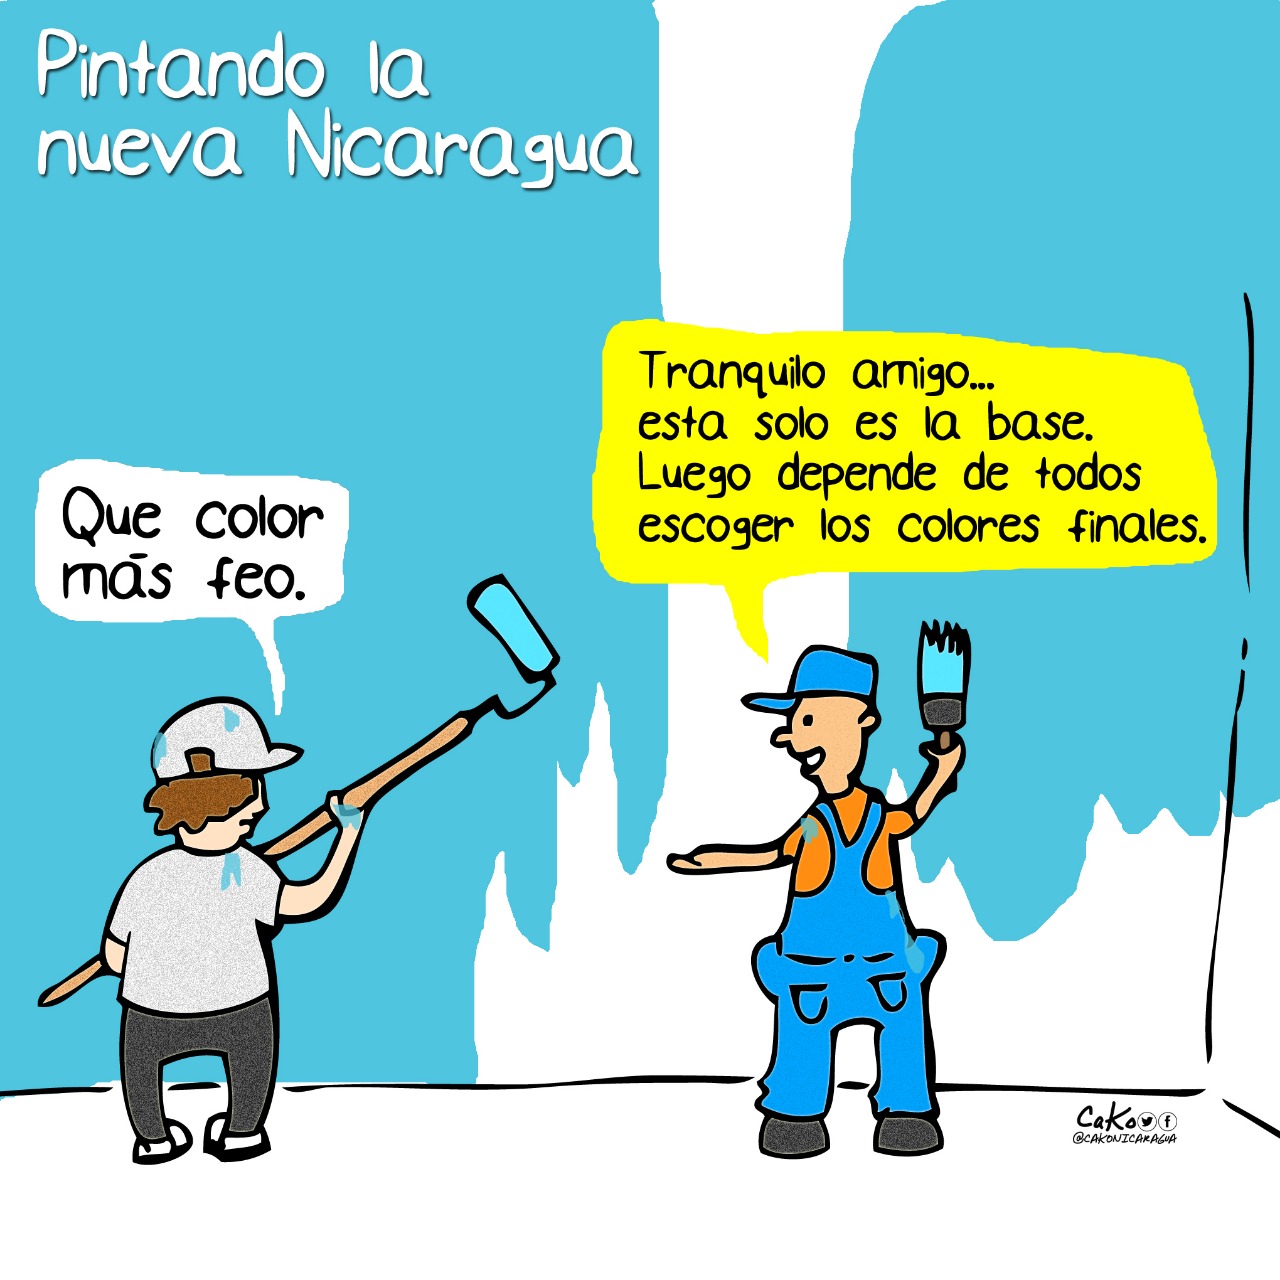 La Caricatura: "Pintando la nueva Nicaragua"